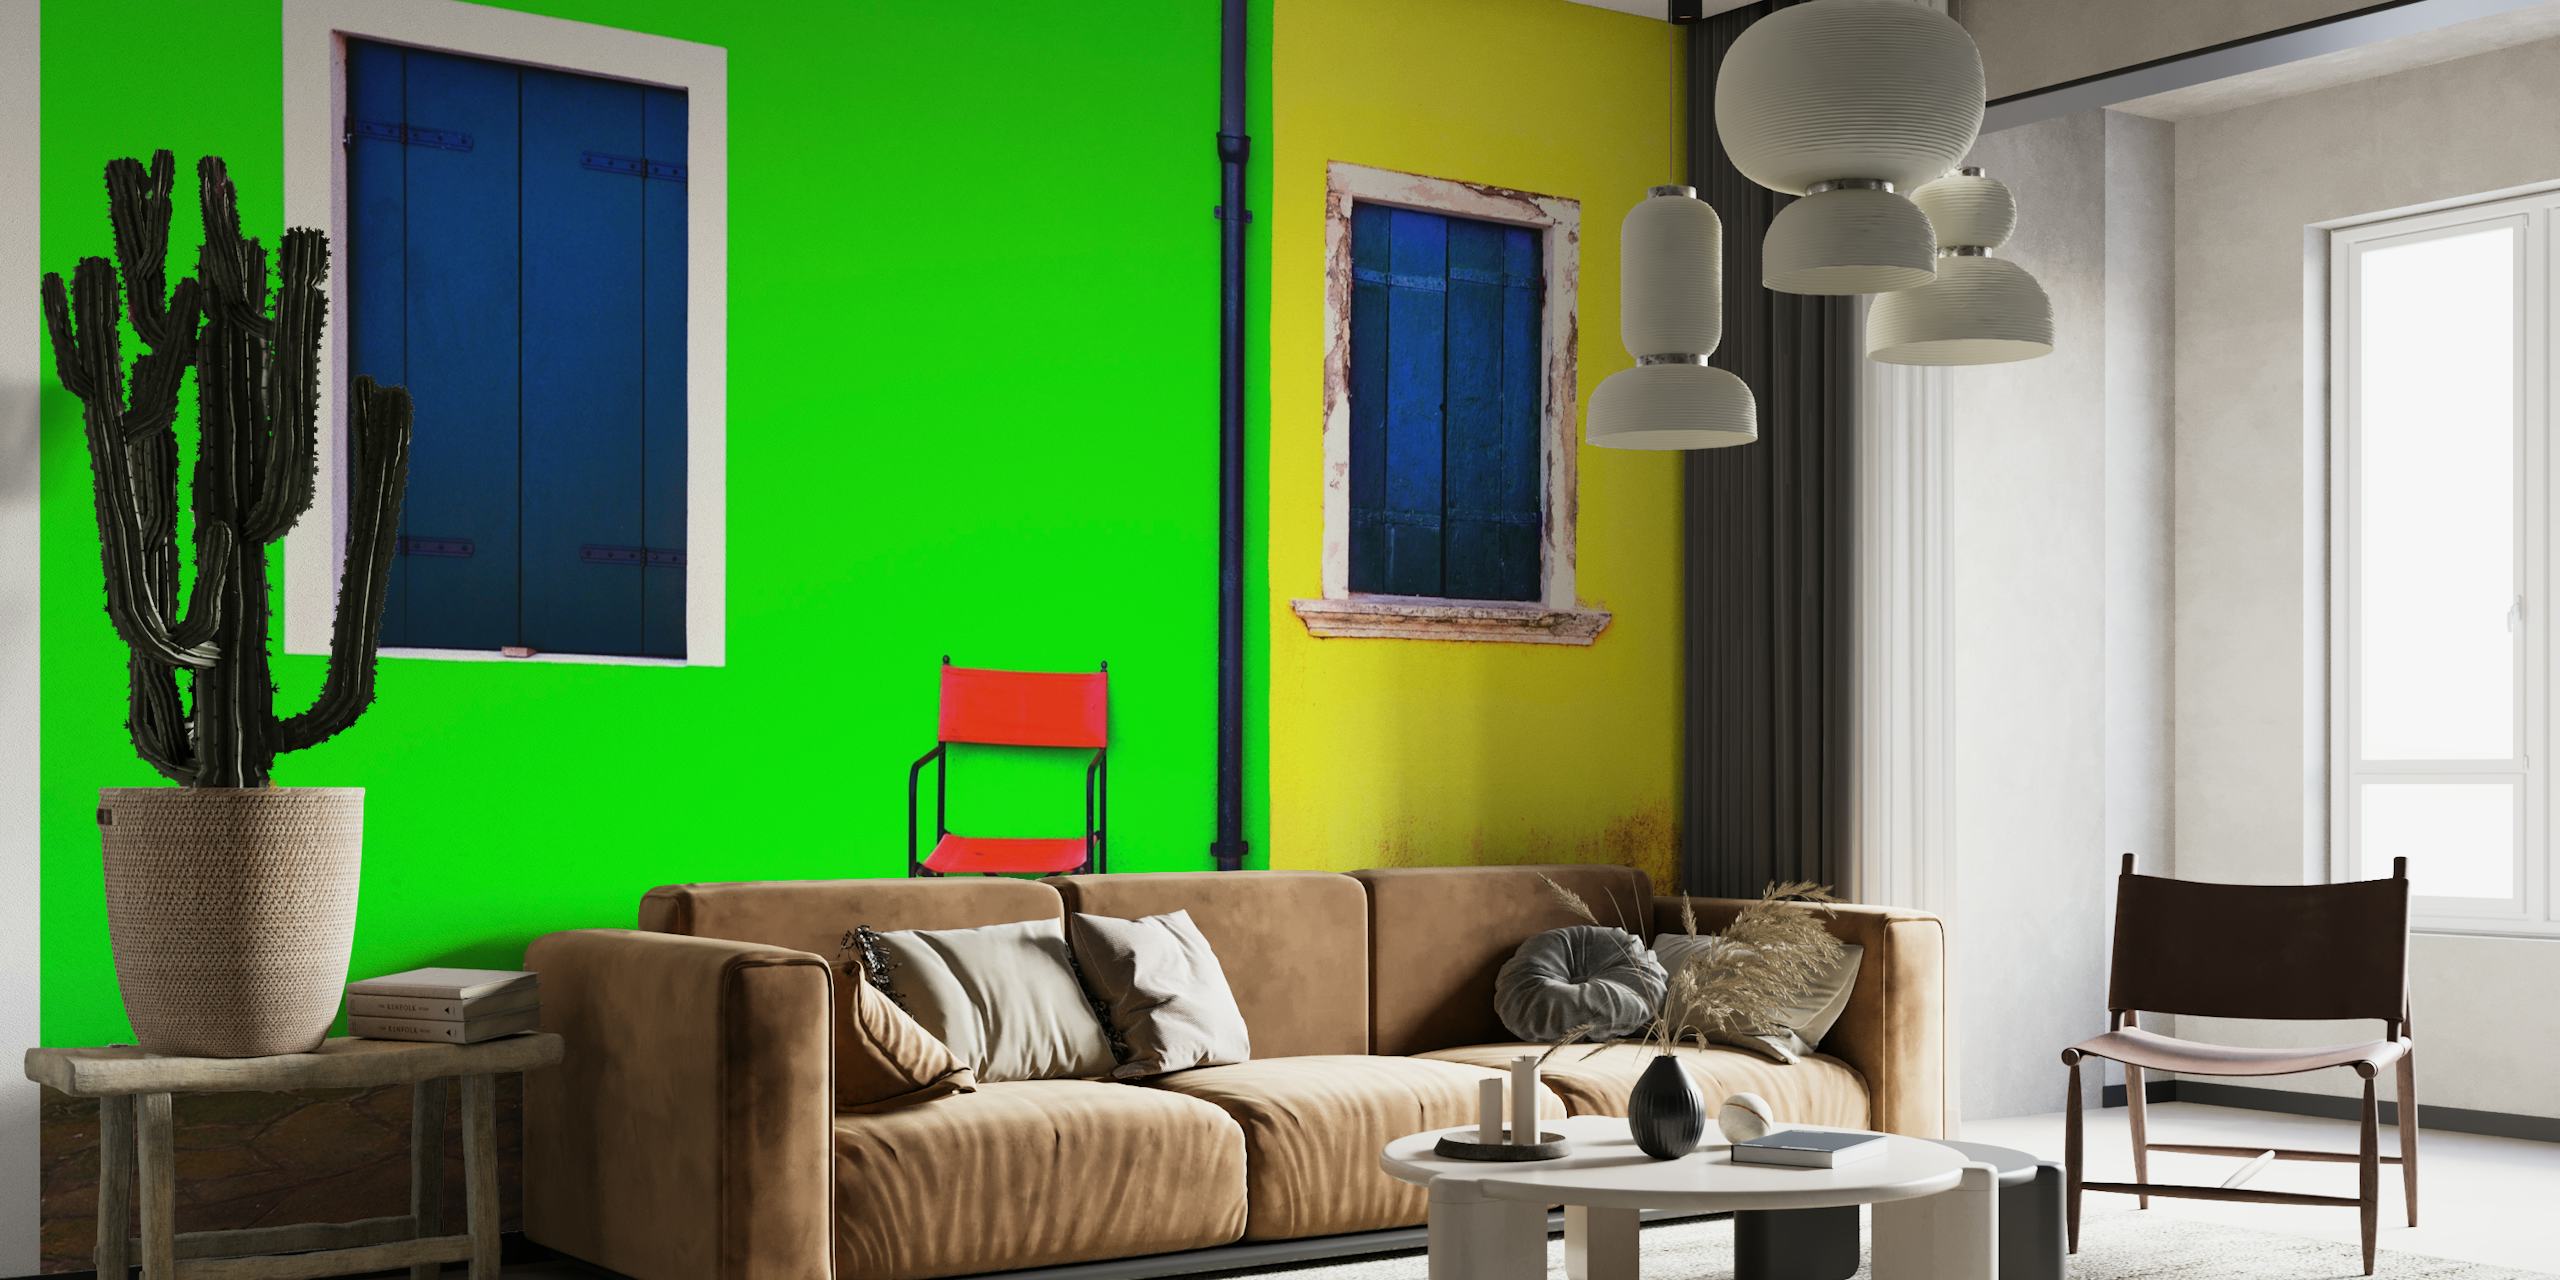 Carta da parati audace e minimalista con una parete verde con una finestra blu, una parete gialla con una finestra blu e una sedia rossa